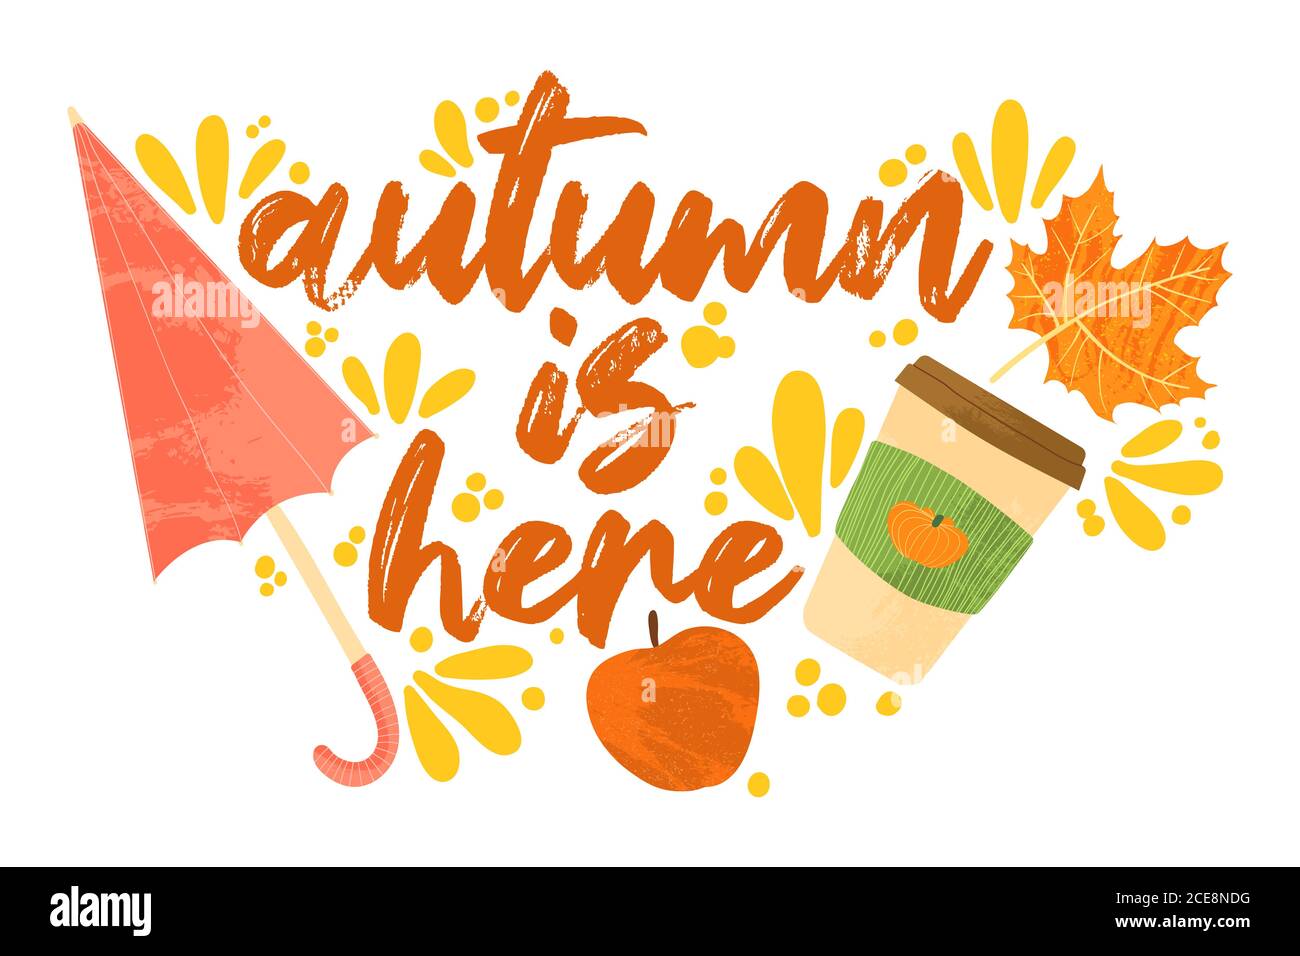 Herbst ist da - Herbst Typografie Zitate mit Herbst Elemente. Vektor-Zitate mit Herbstblättern, Regenschirm, Apfel und Becher mit Kürbis Latte. Isoliert Stock Vektor